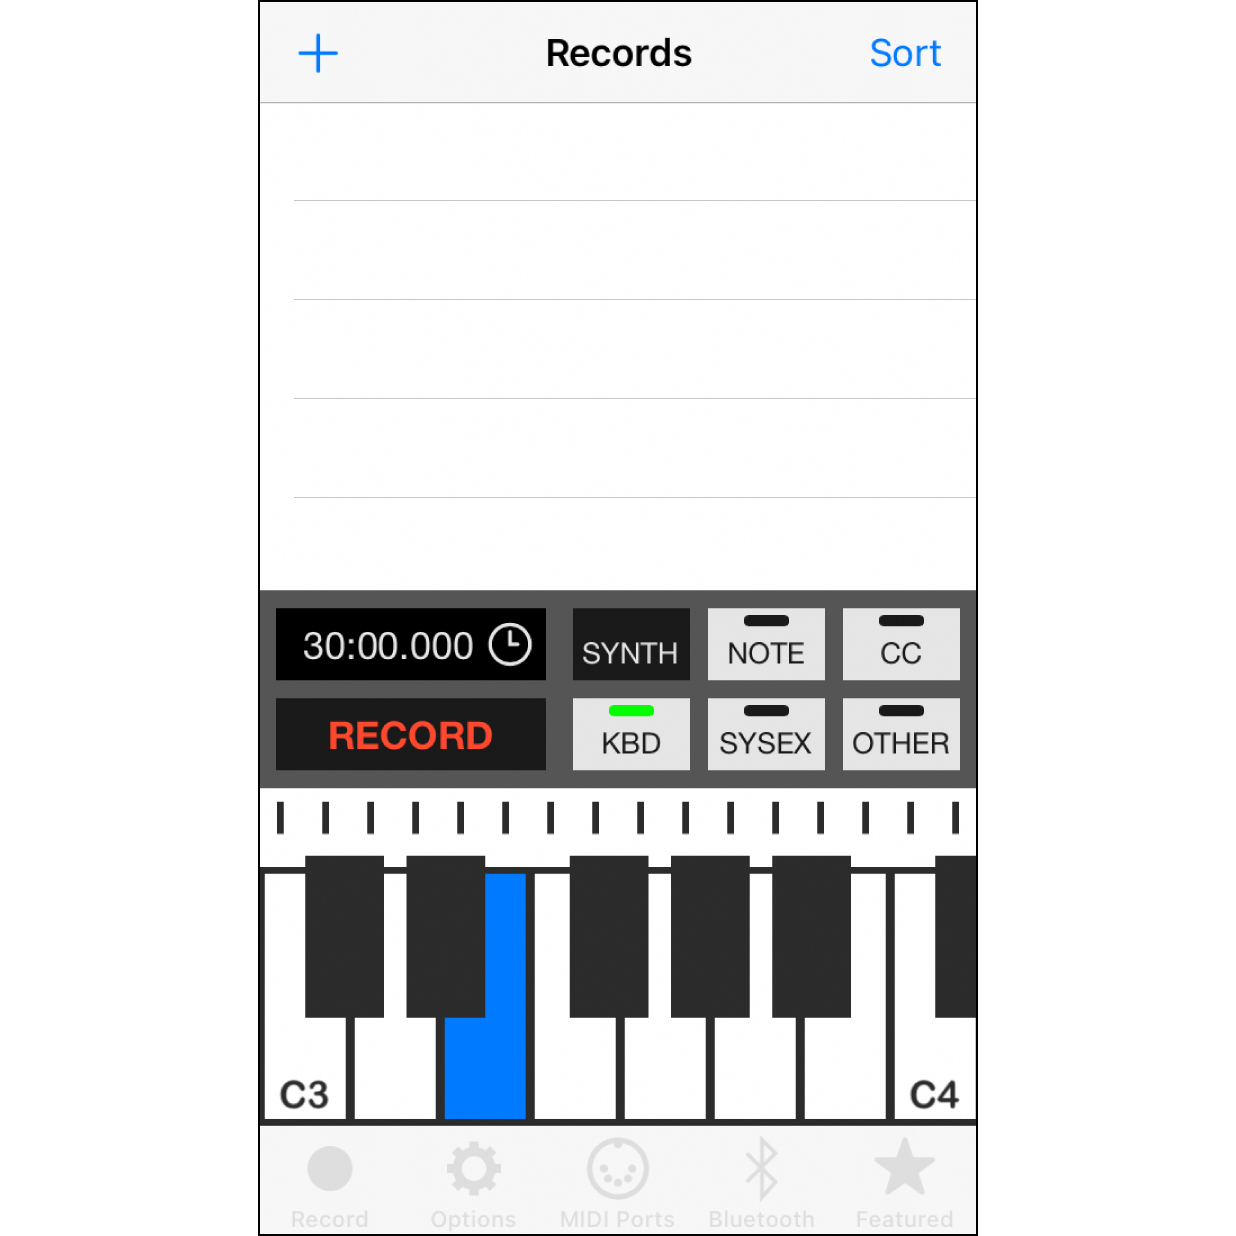 4.點按App的錄音頁面回到App的”Record”功能頁面，使用下方鍵盤彈奏音符，音樂盒即可演奏出相對應的音樂。